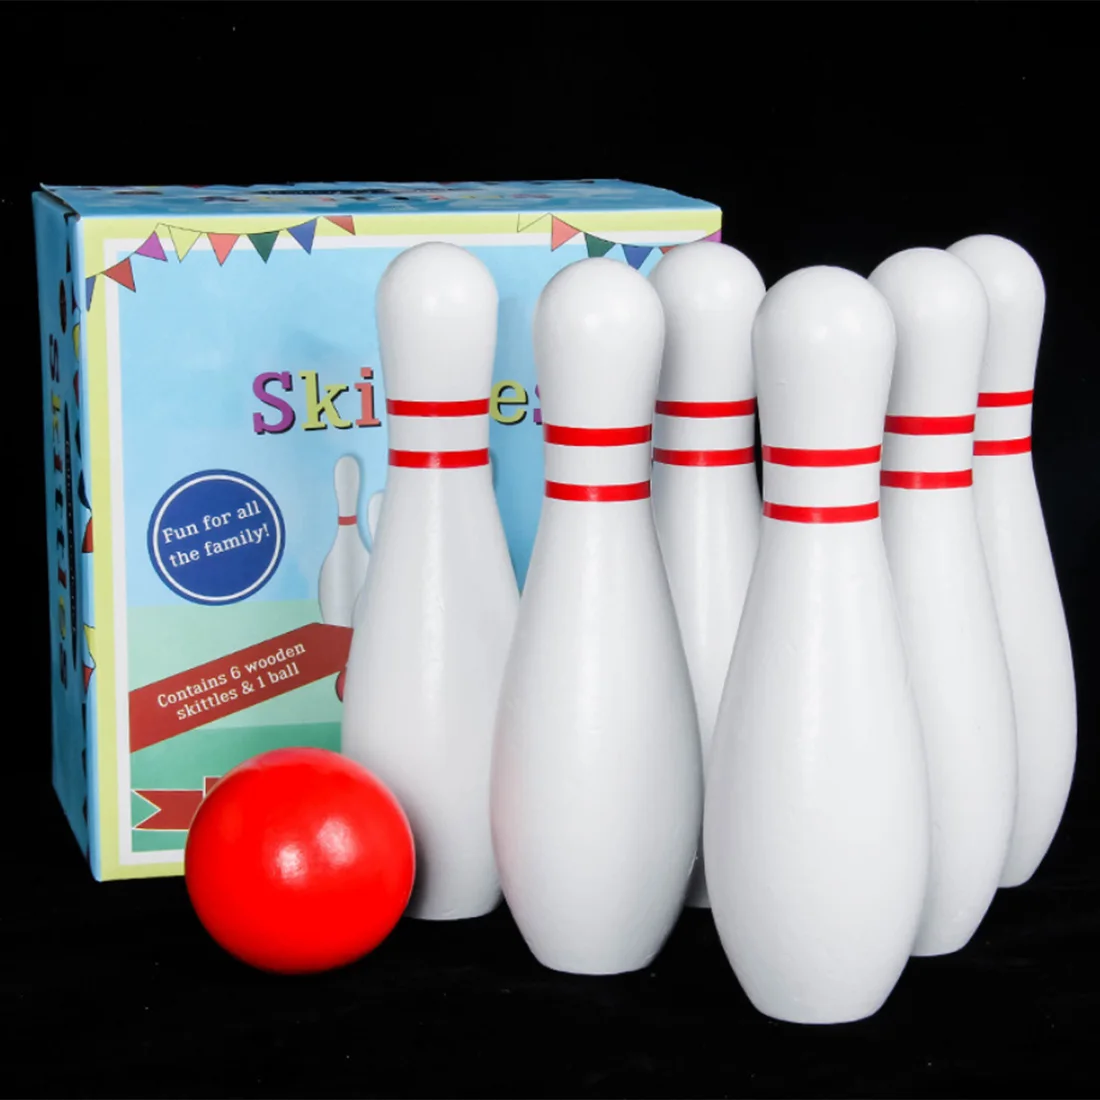 Boule de bowling & 10 broches maison de poupées miniature skittles, échelle 1.12 